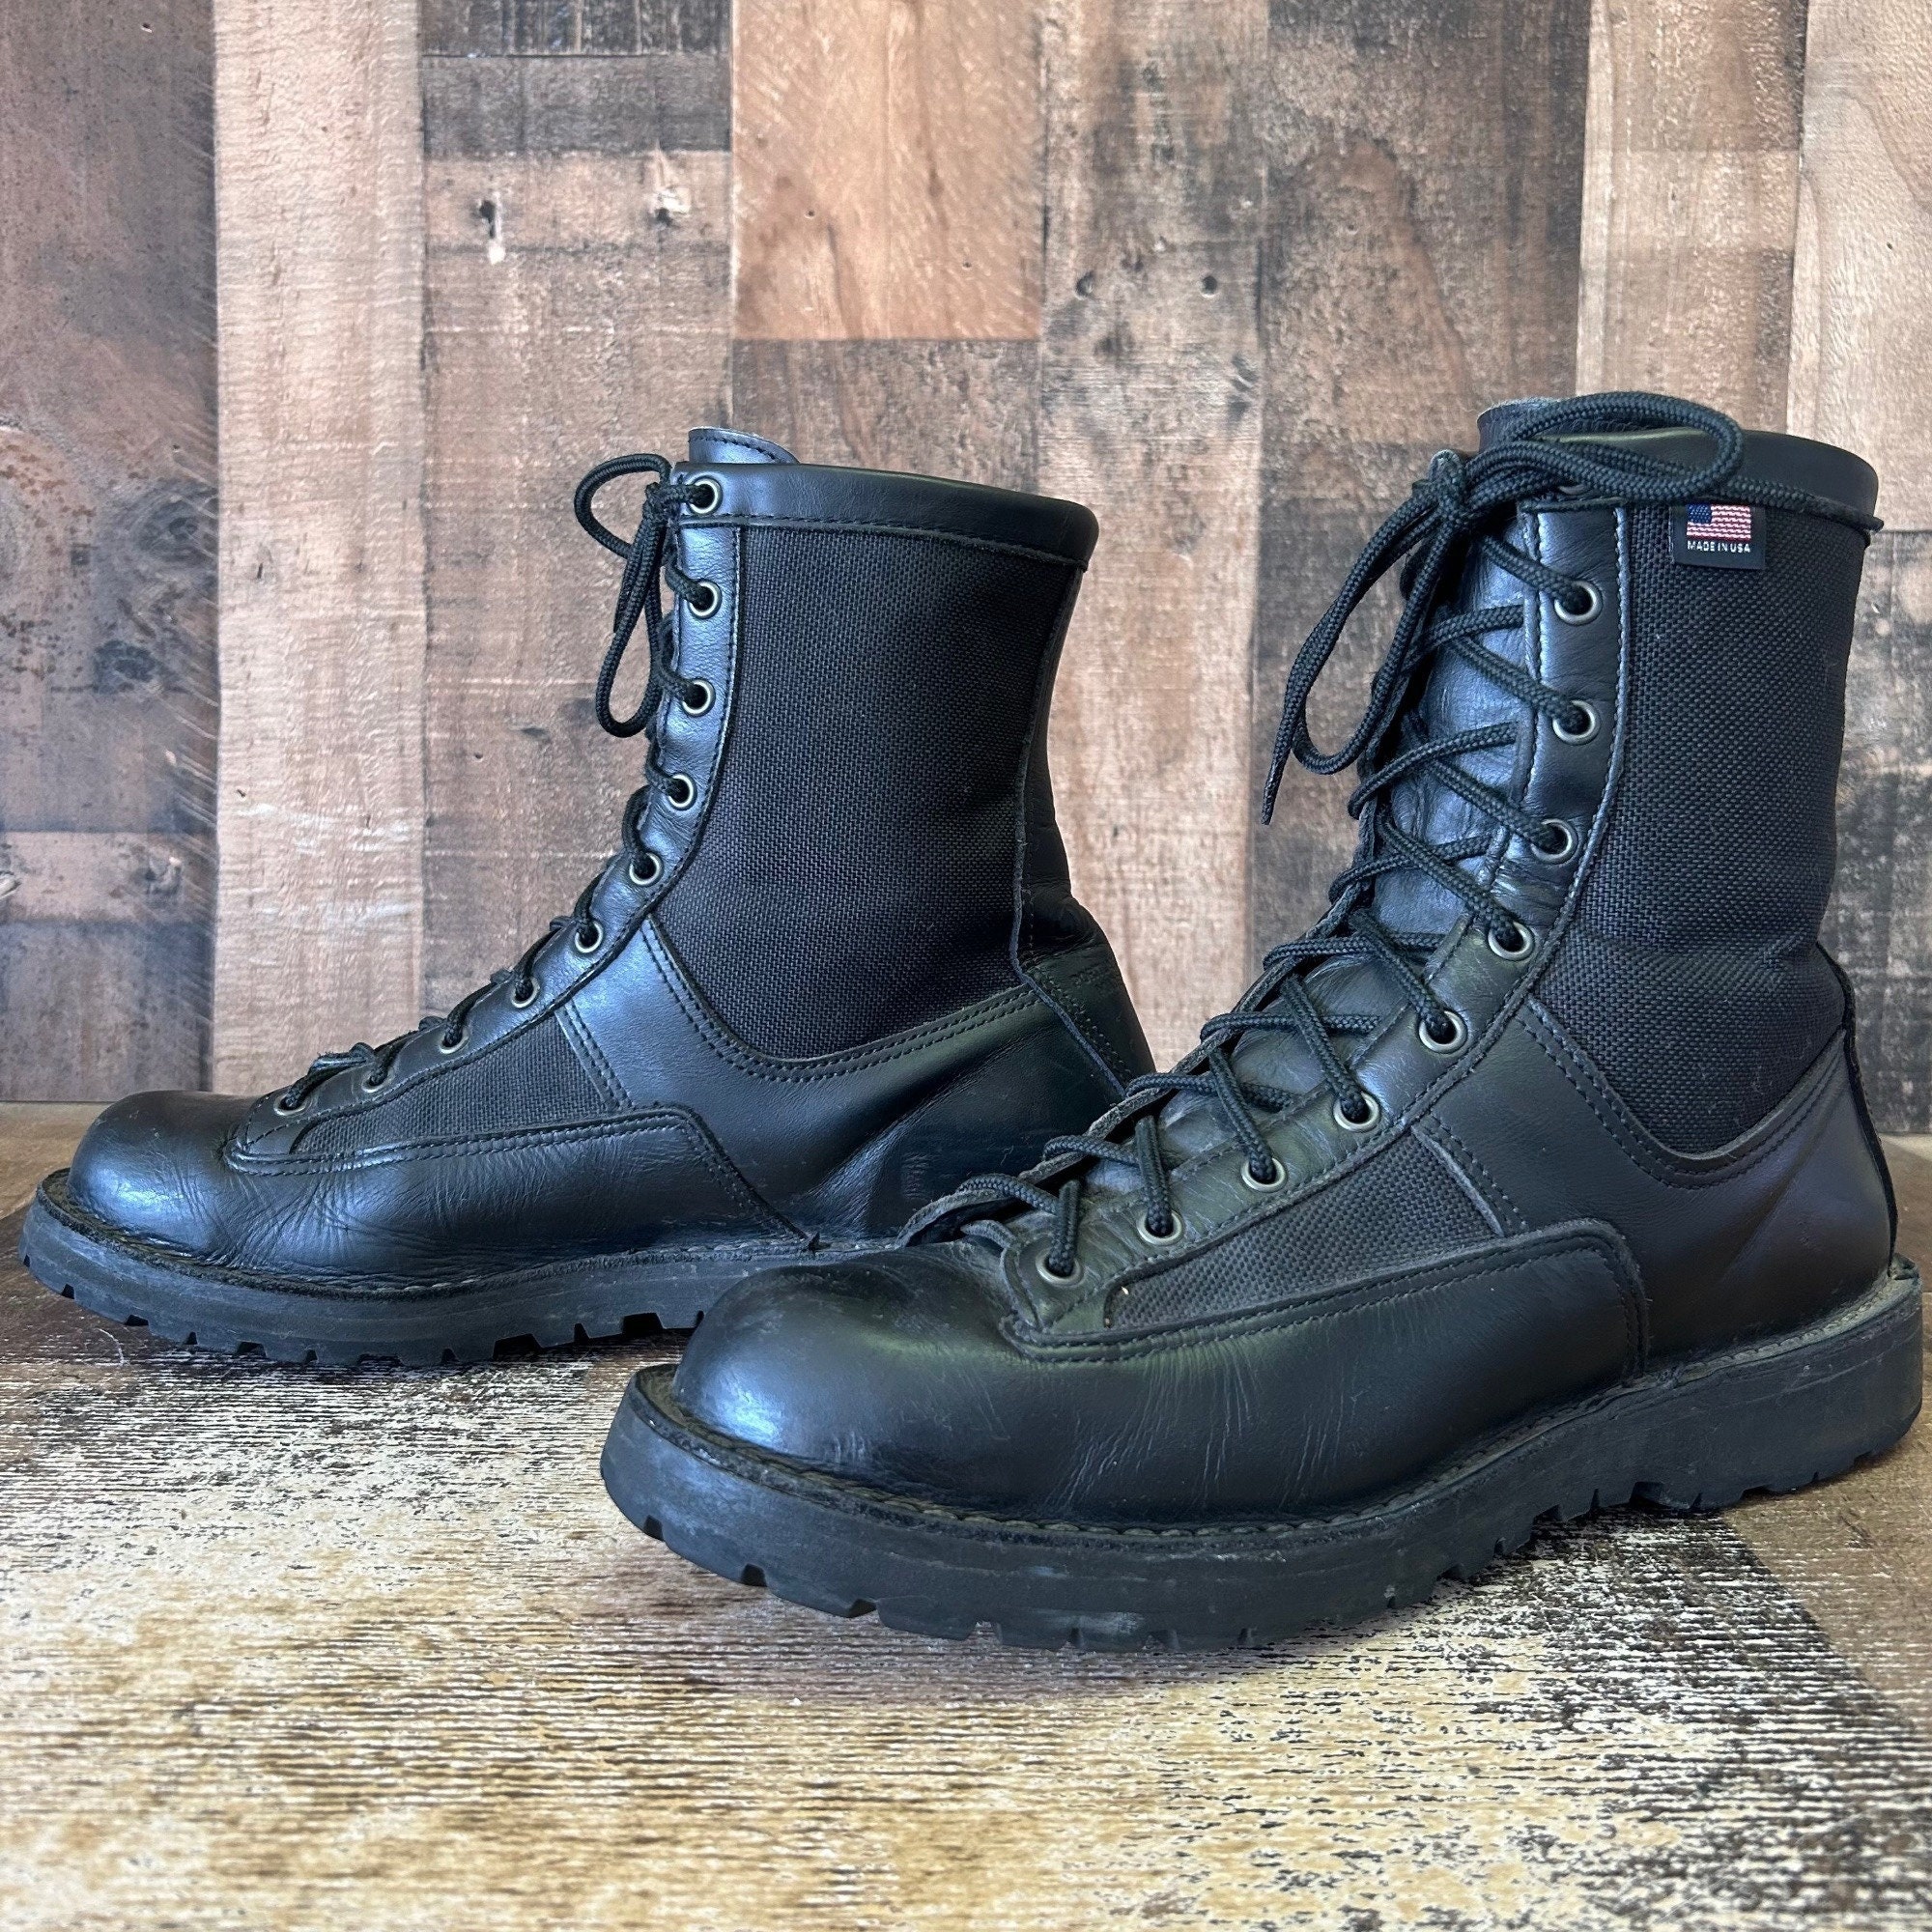 Vintage Danner Boots - Etsy